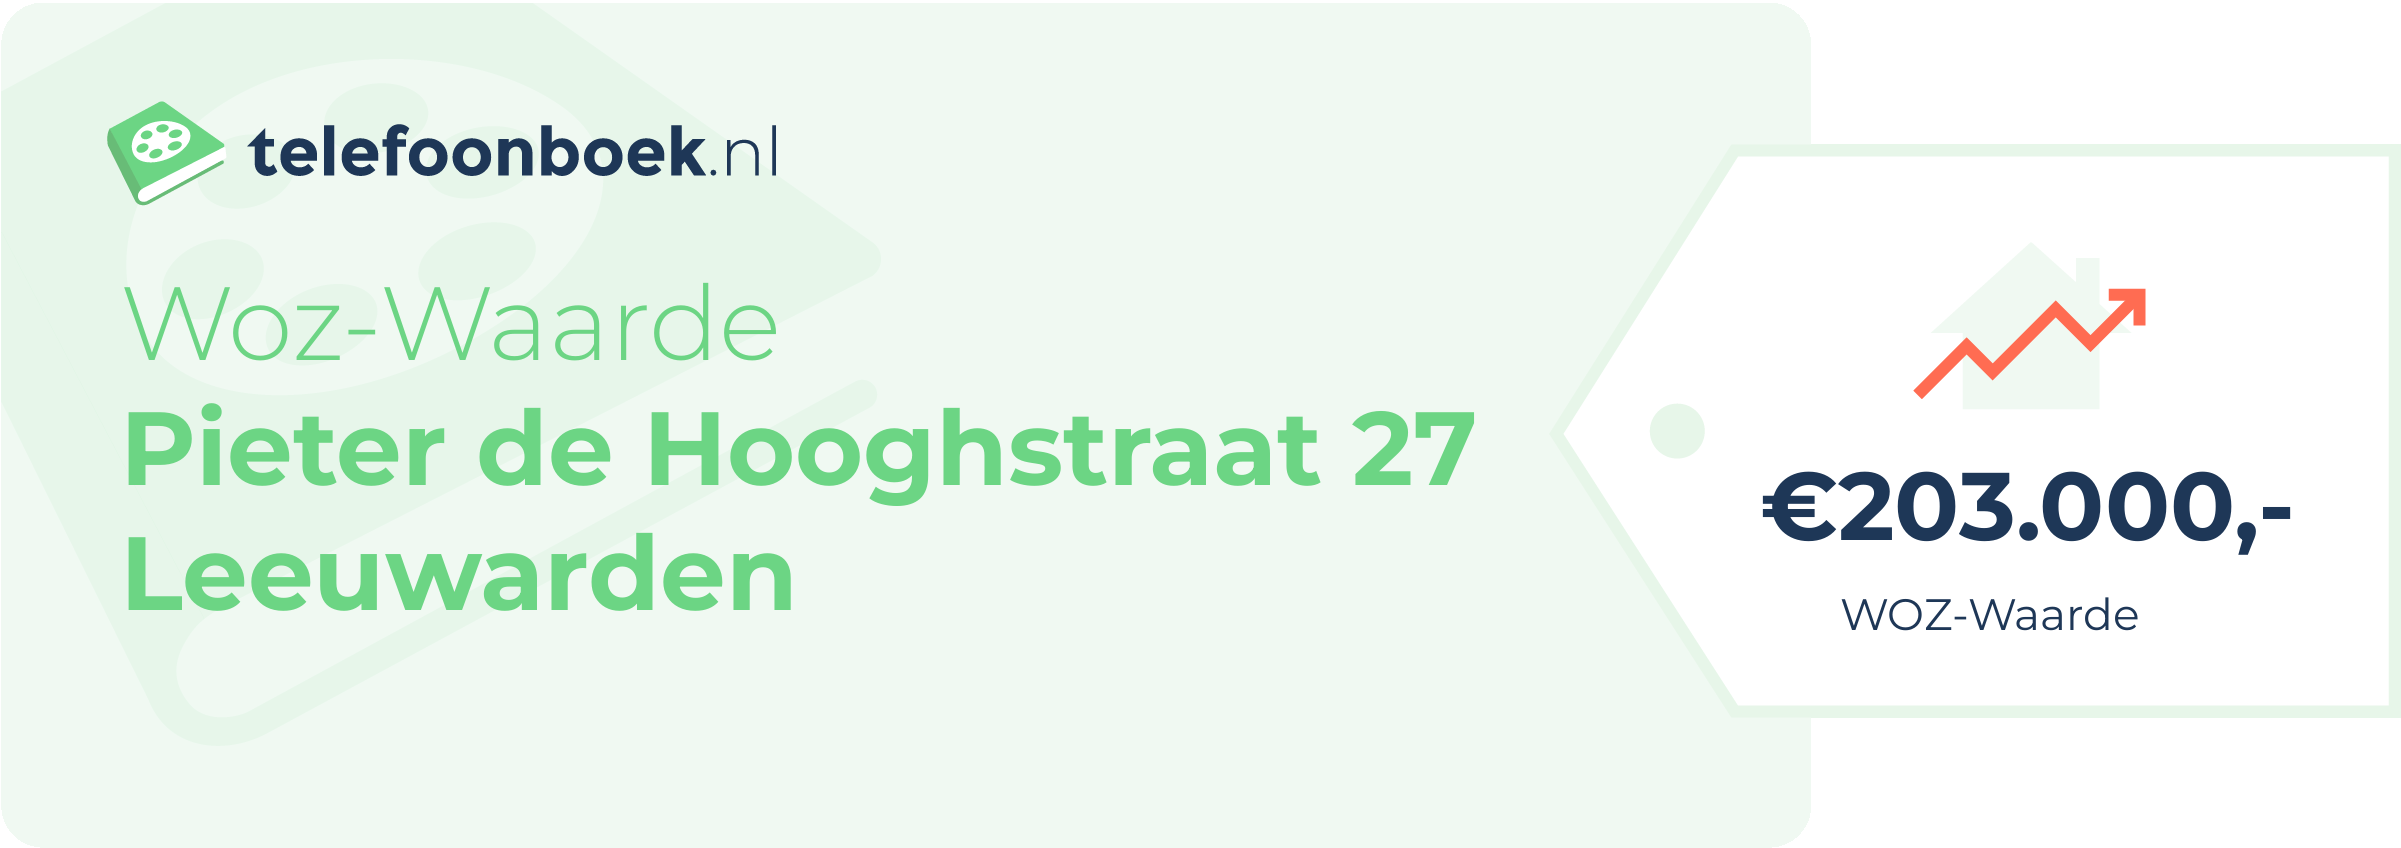 WOZ-waarde Pieter De Hooghstraat 27 Leeuwarden